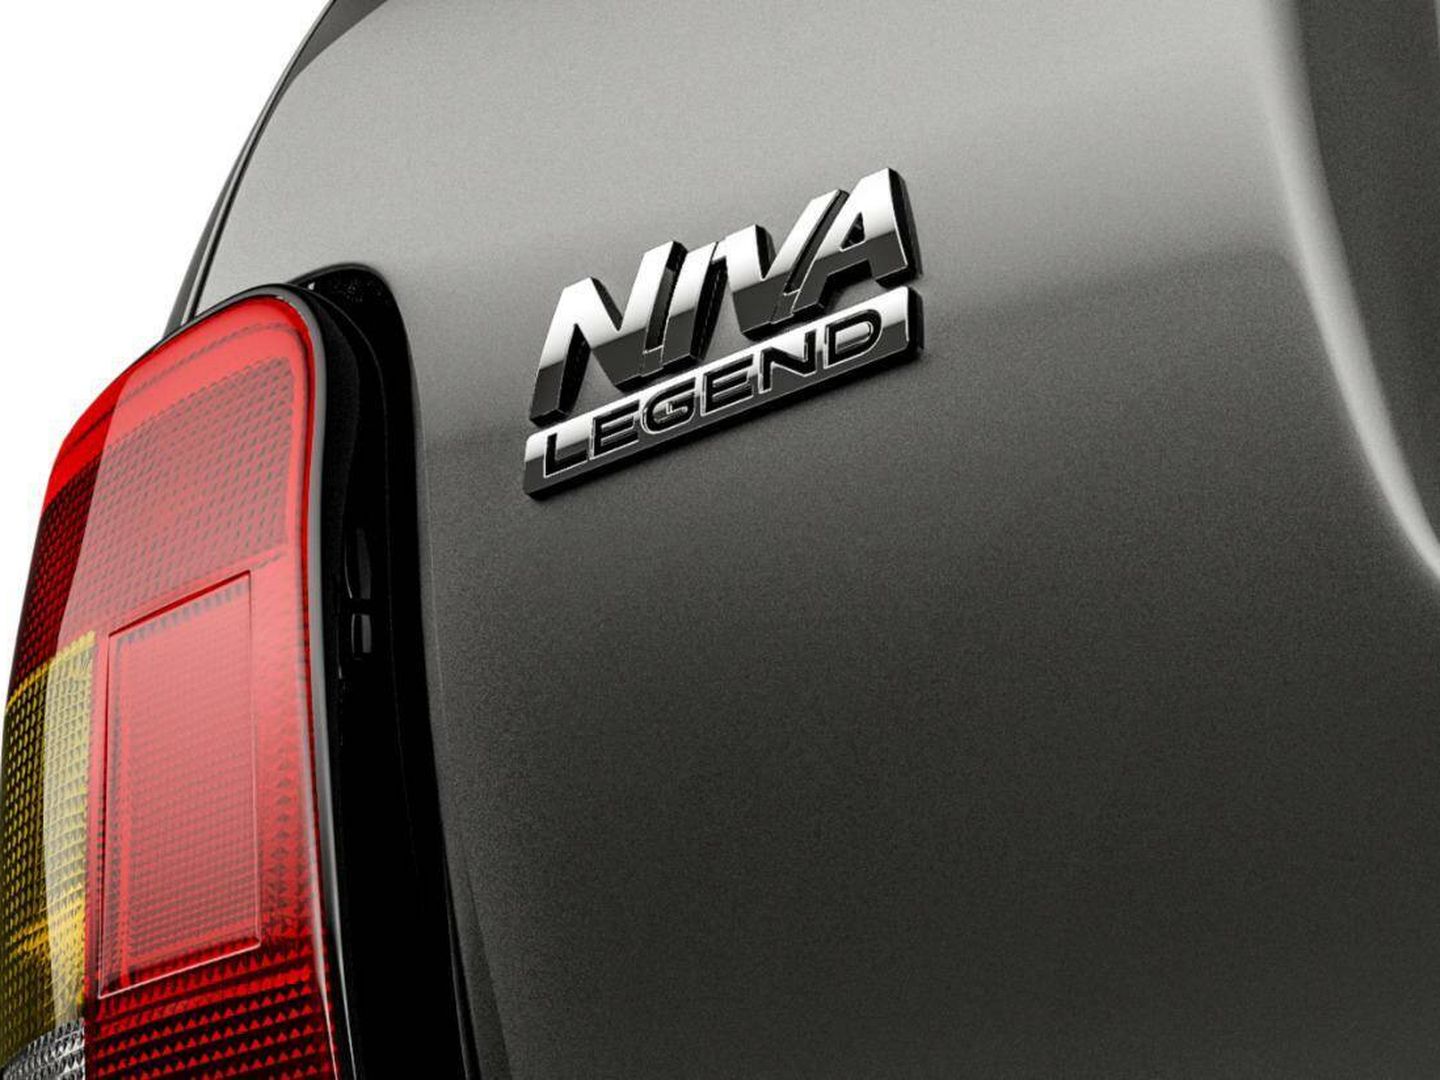 A lo largo de su vida comercial ha sido VAZ 2121, Lada Niva, Lada 4x4 o Lada Niva Legend, sumando casi tres millones de unidades desde 1977.